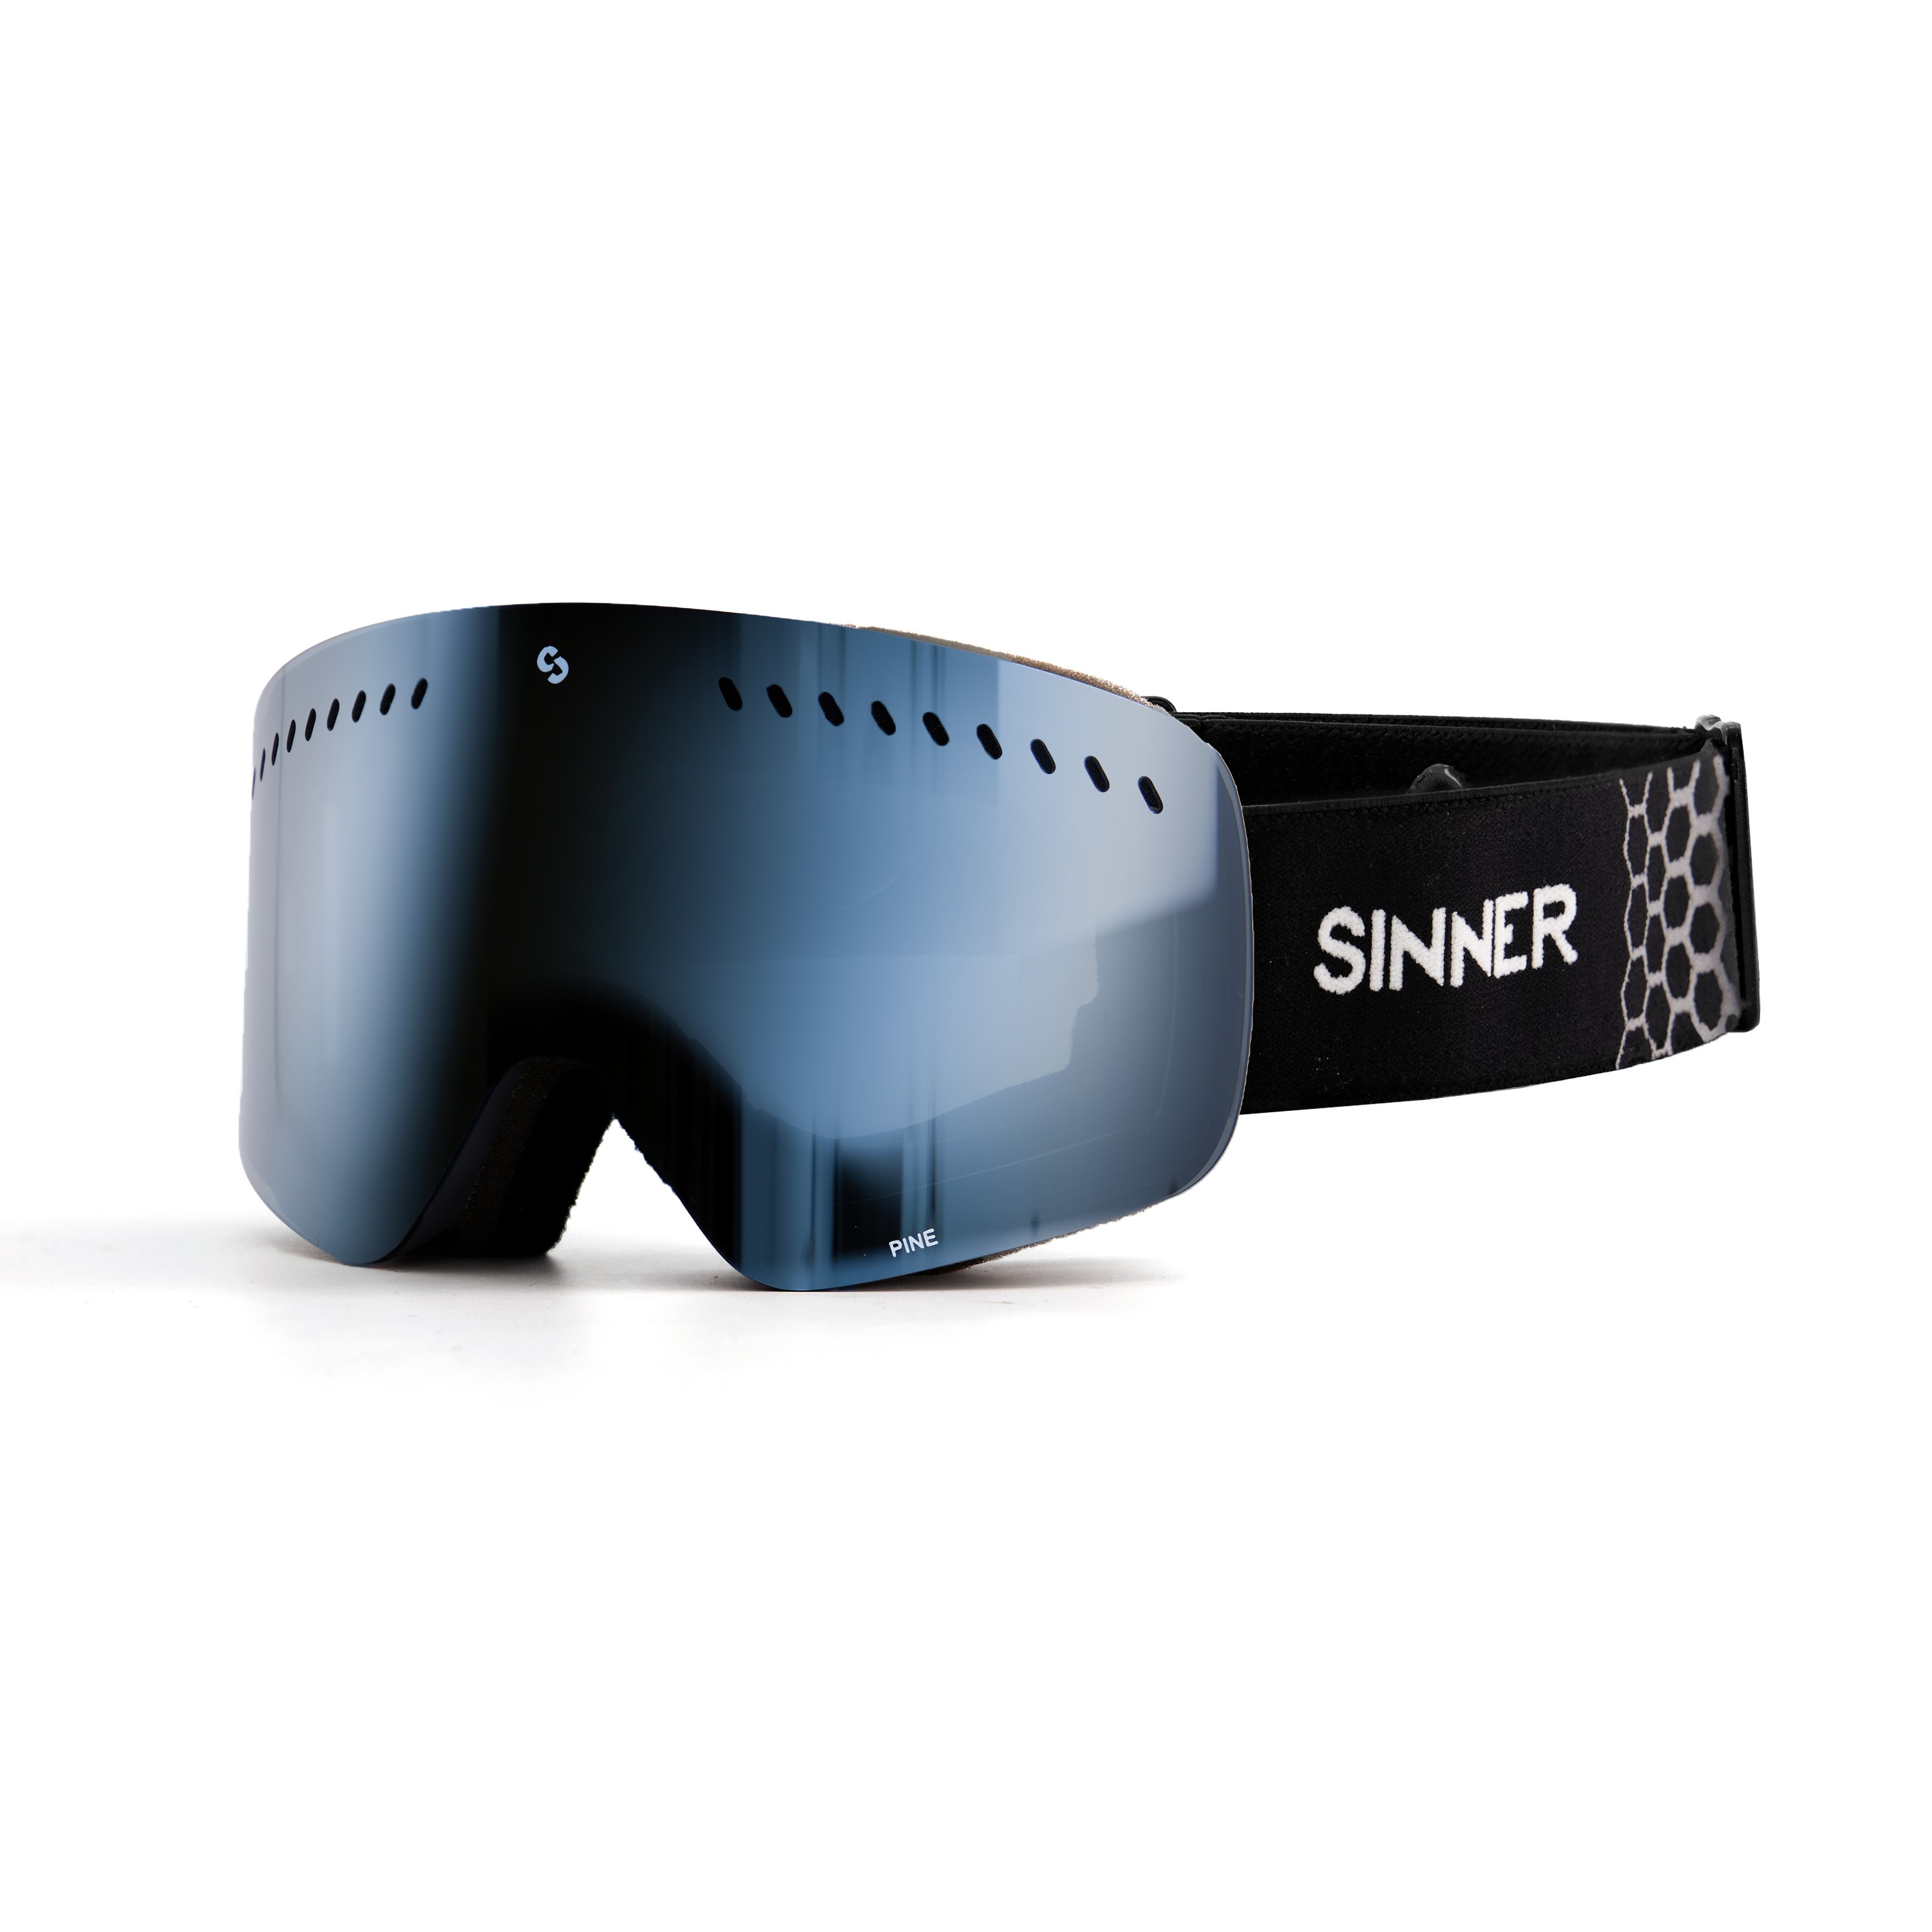 Sinner Pine Skibril - Zwart Frame + Blauwe Spiegellens